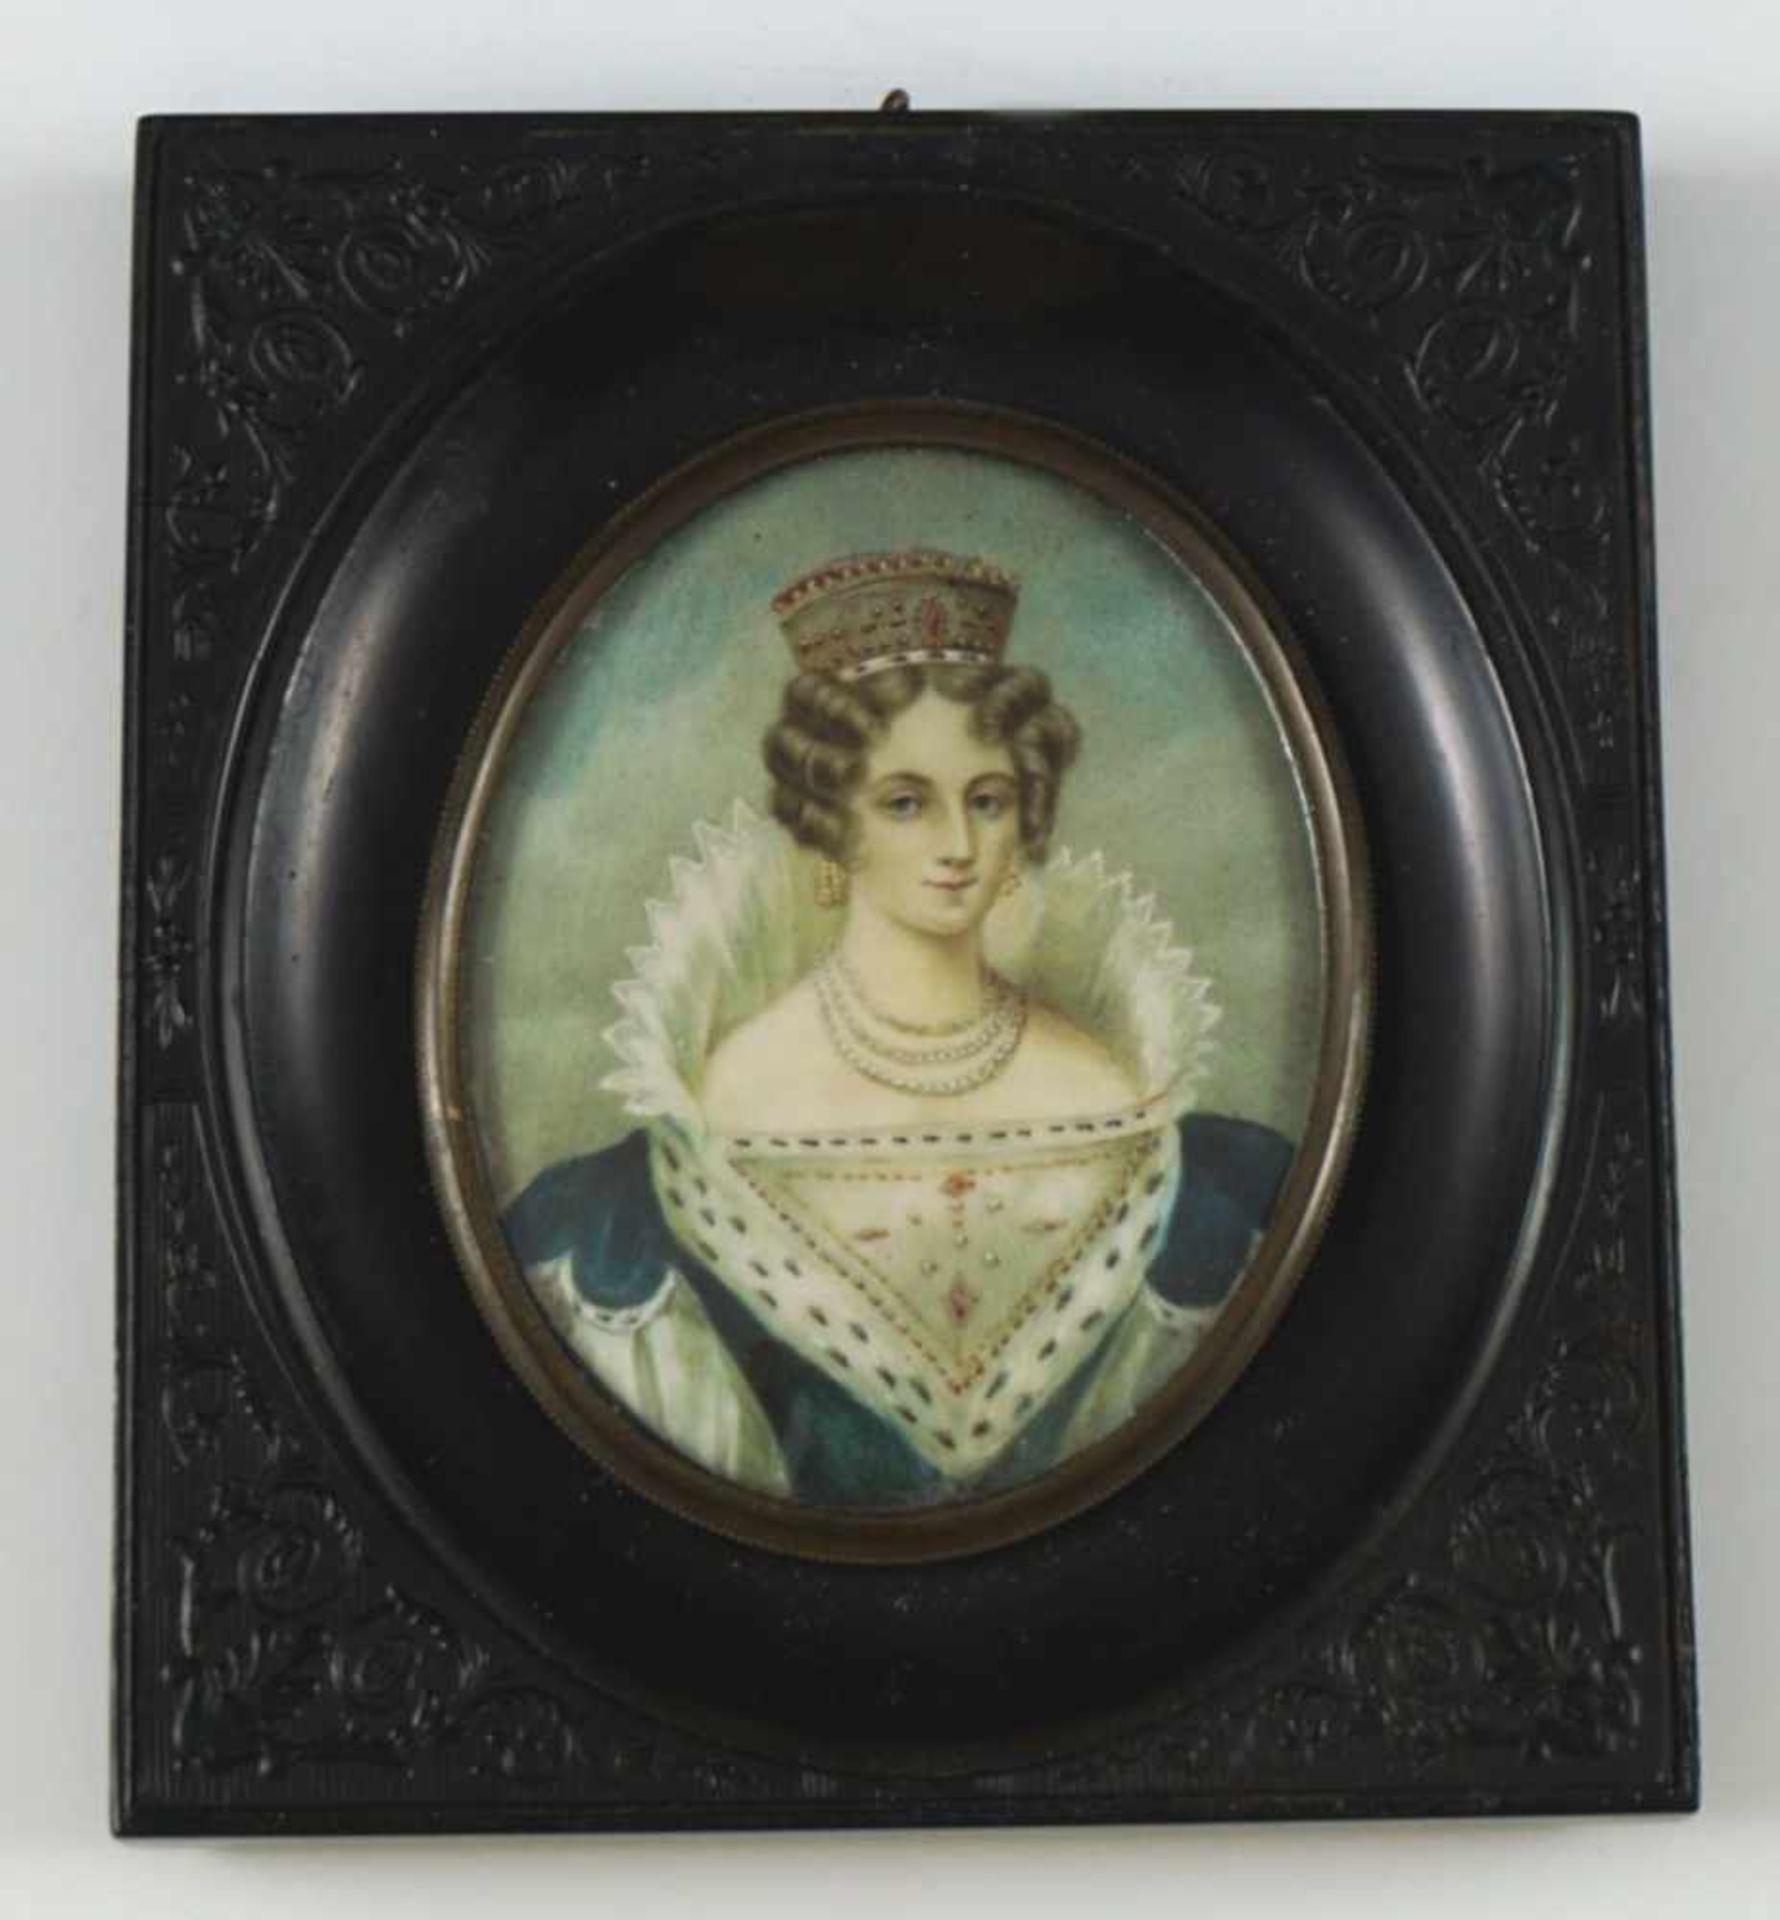 Portrait einer Fürstin im Staatsgewand mit Hermelin. Auf Elfenbein. Um 1900. Oval, 8,2 x 6,3 cm. R